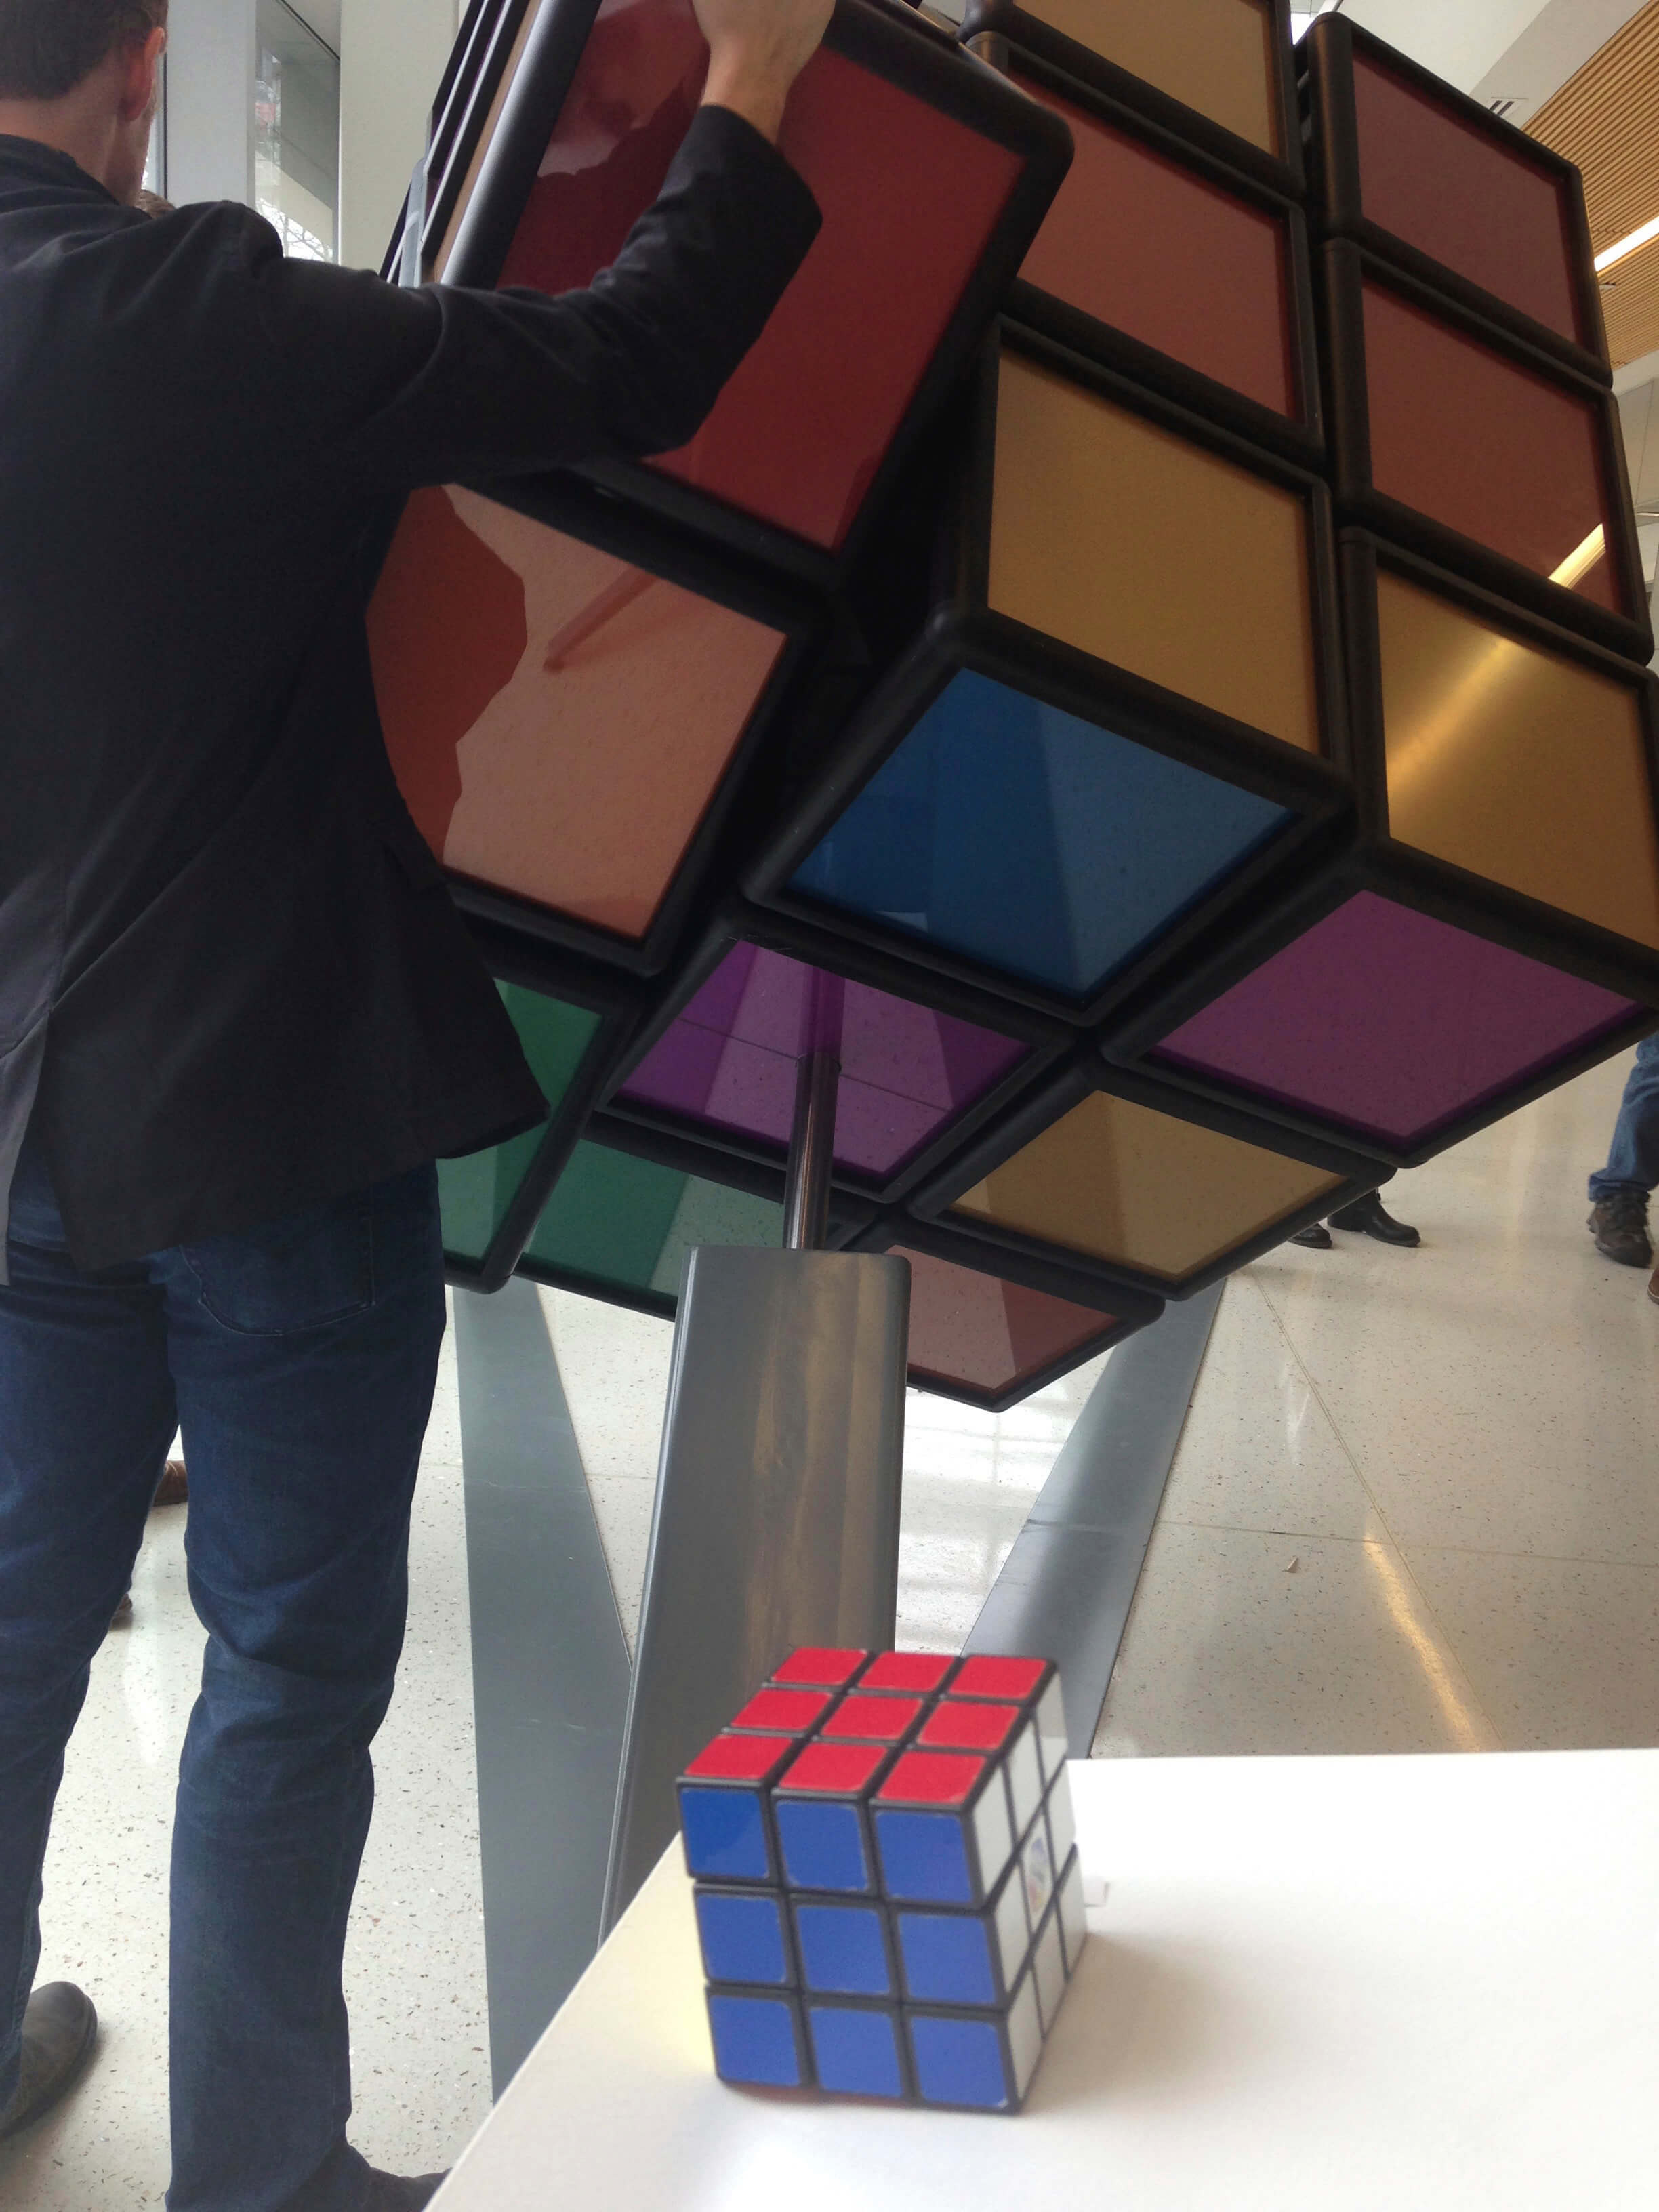 El enorme cubo de Rubik fue creada para que jueguen con el los estudiantes y otras personas en la Universidad de Michigan.